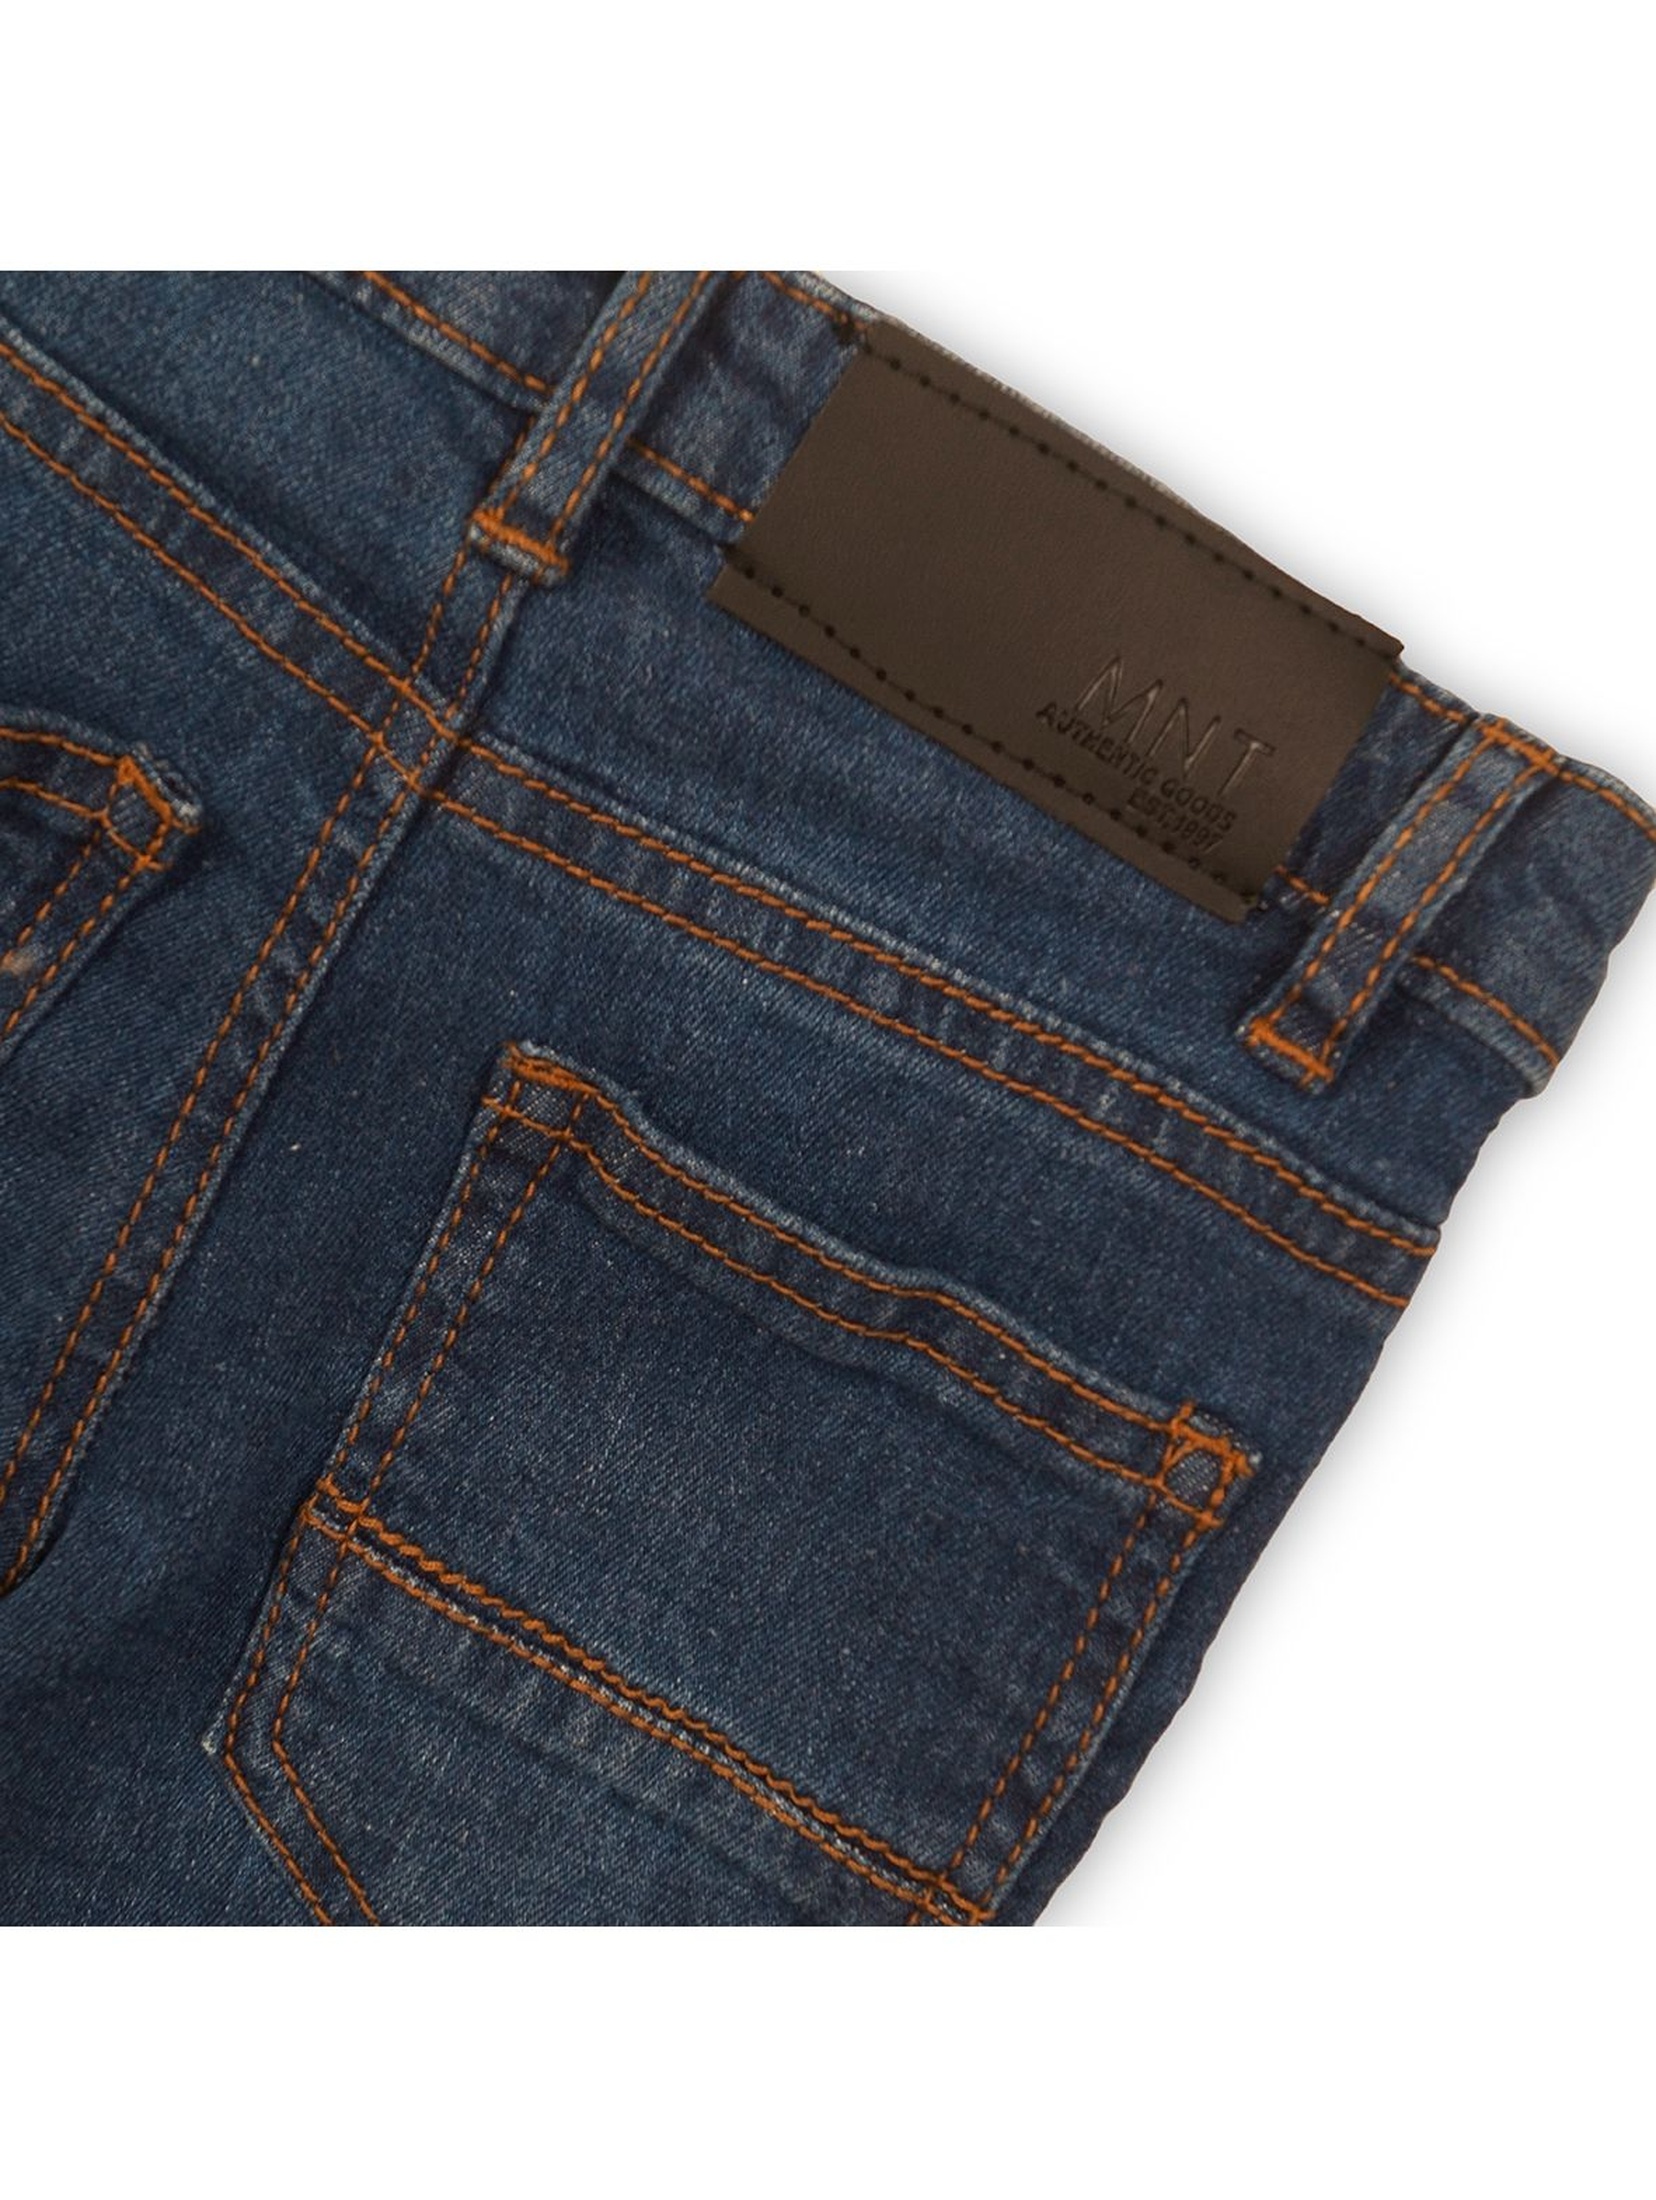 Niebieskie spodnie jeansowe dla chłopca rozm 92/98